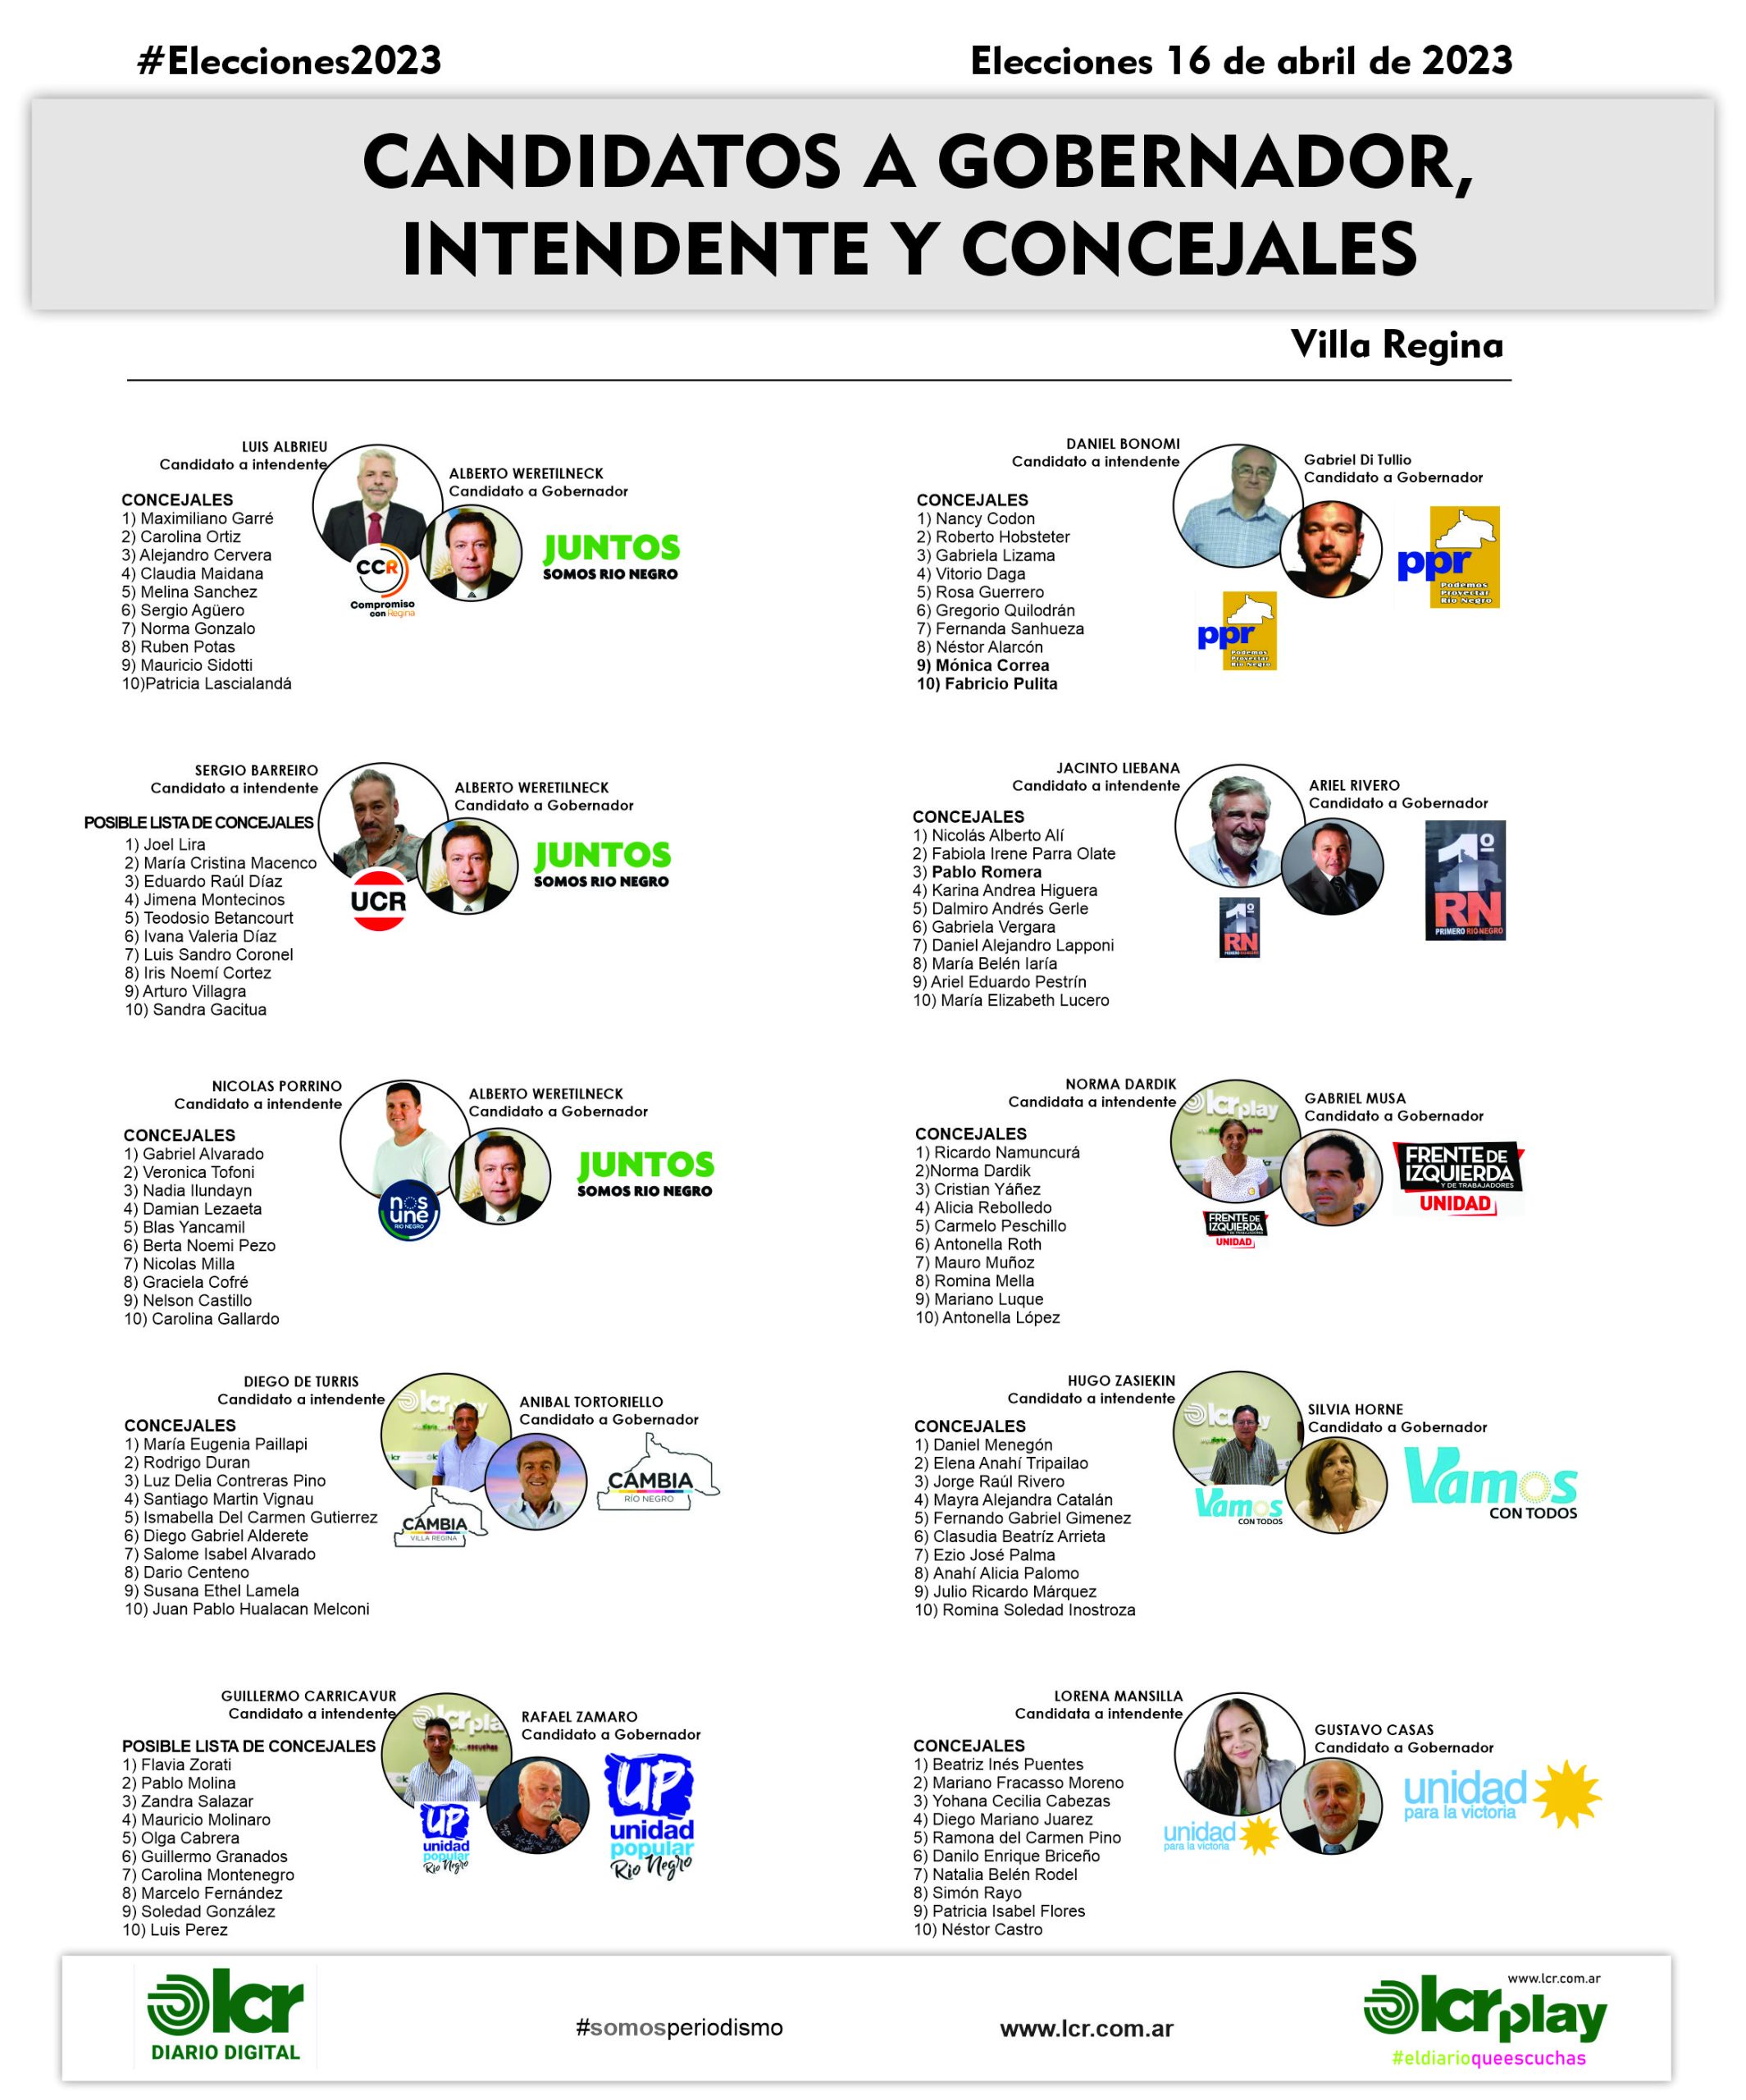 Modificaciones en concejales 9 y 10 del partido PPR y modificación en concejal 3 de 1 Río Negro.